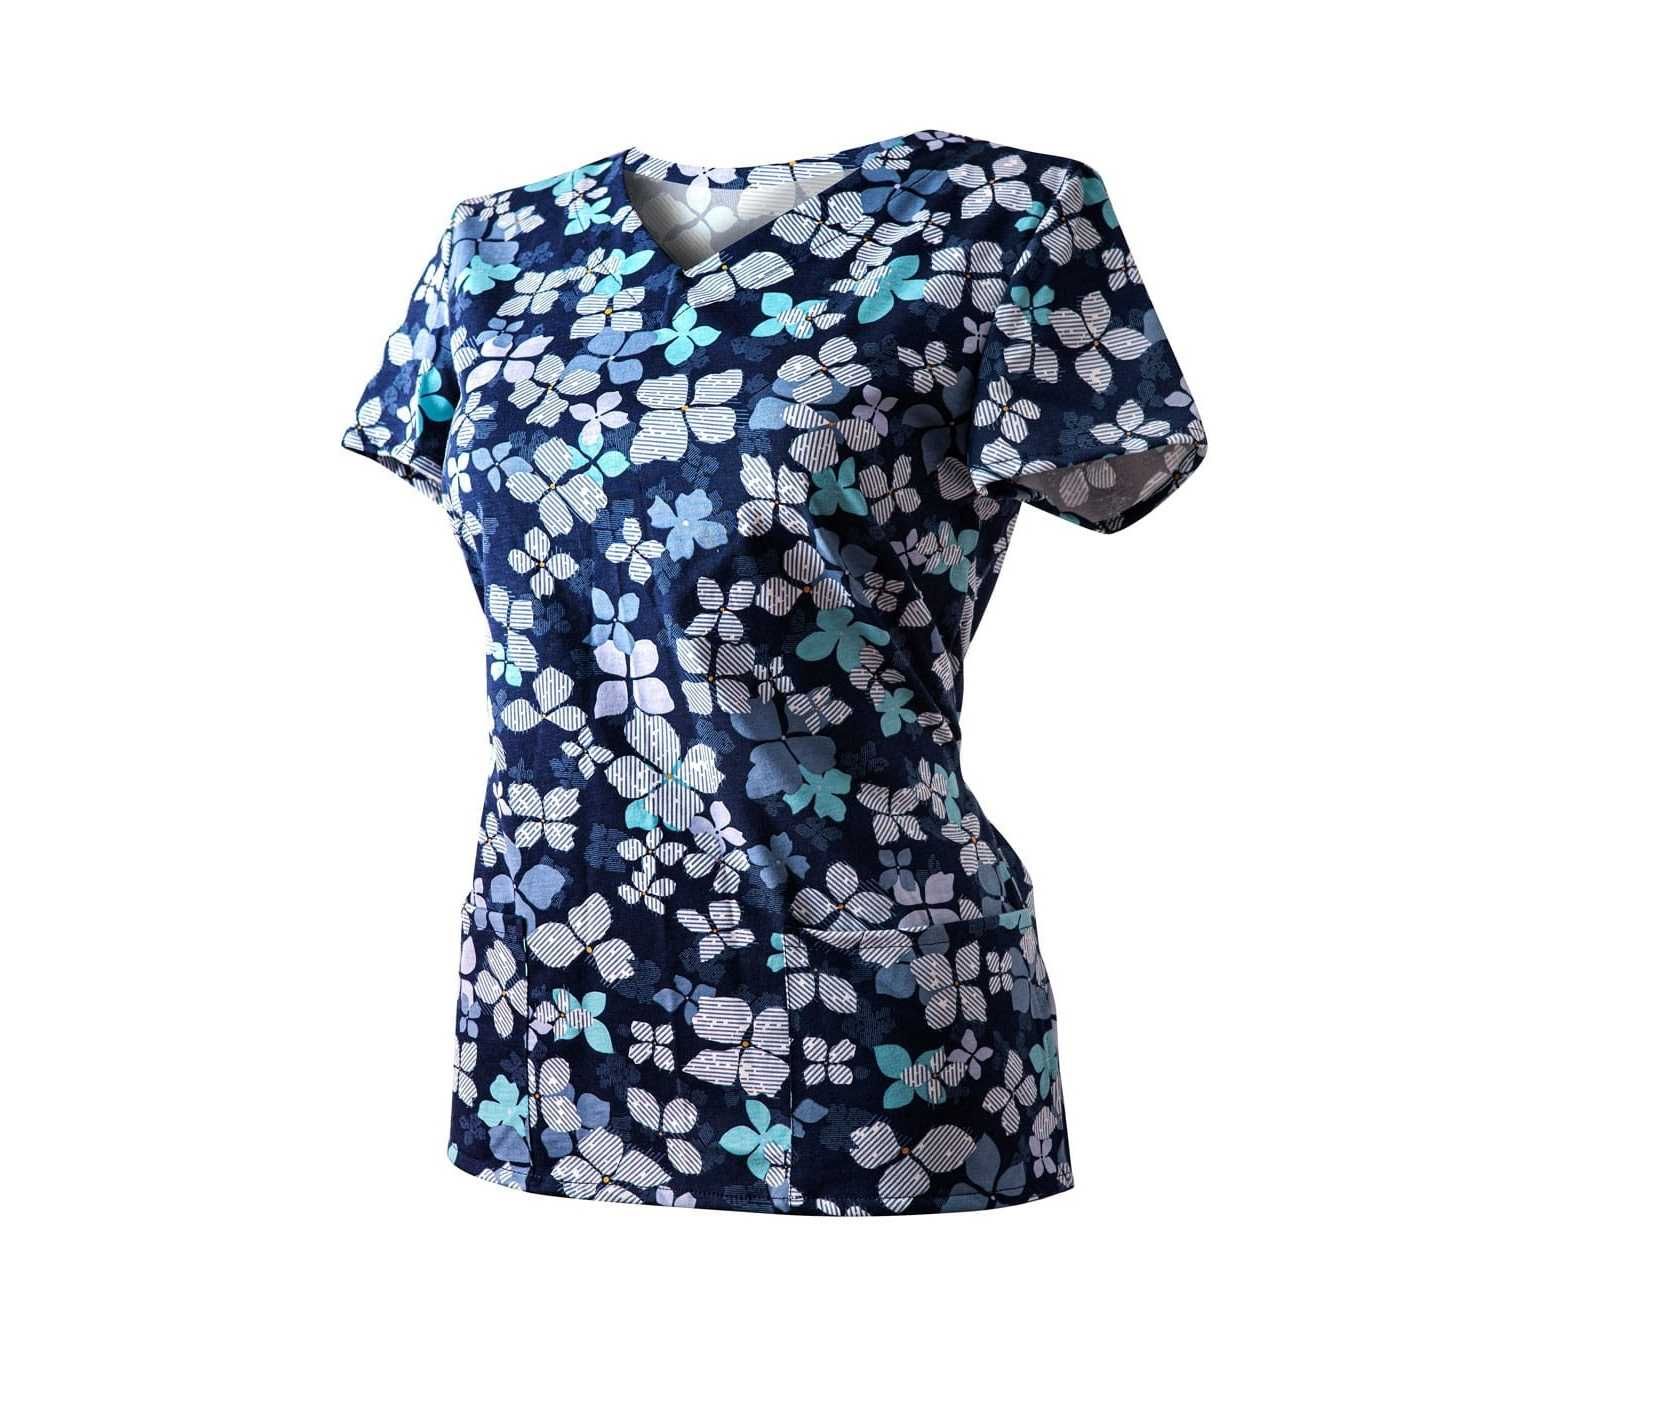 Bluza Medyczna Granatowa Koszulka Bawełniana Kwiaty niebieskie roz 44